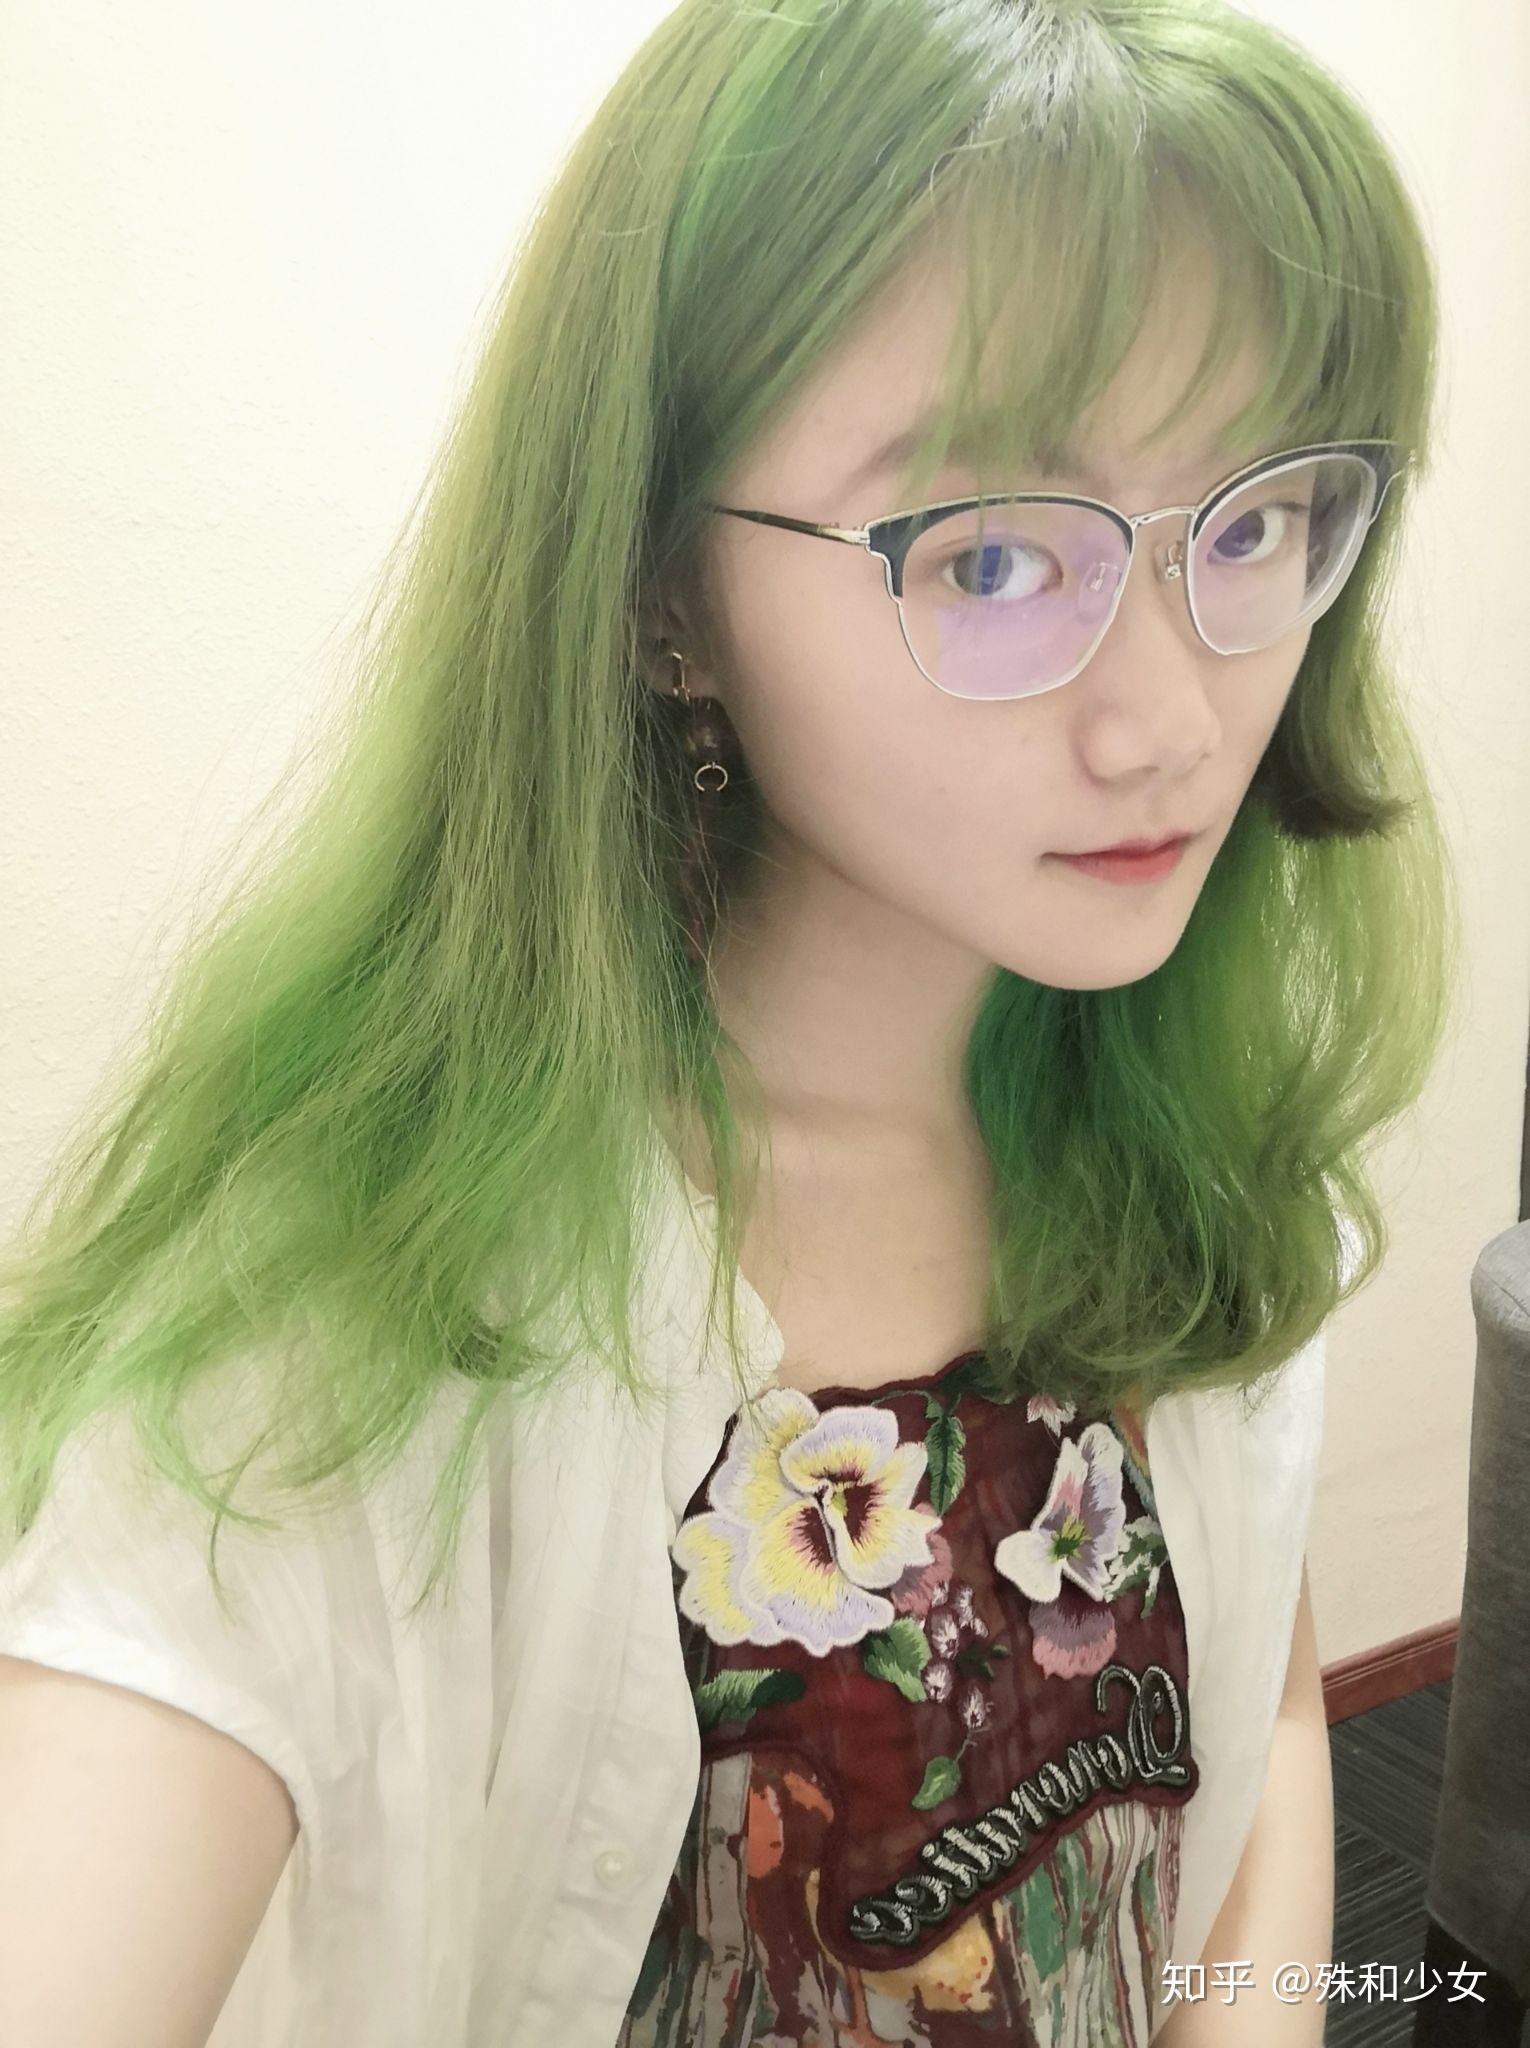 会把头发染成绿色的女生是怎么想的? 